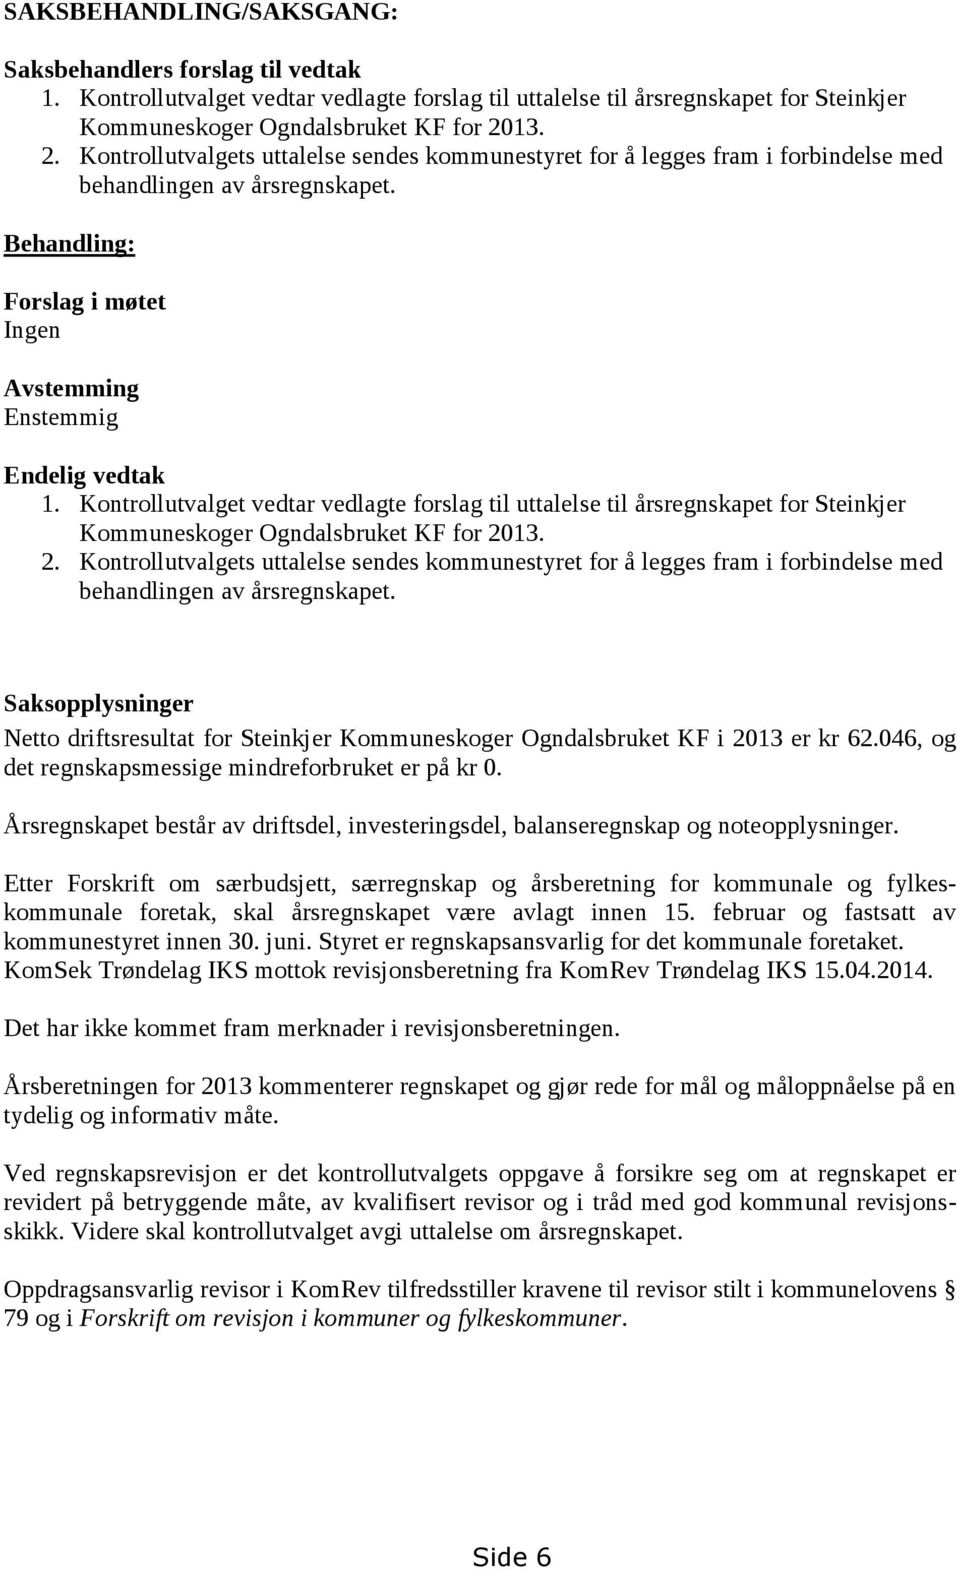 Kontrollutvalget vedtar vedlagte forslag til uttalelse til årsregnskapet for Steinkjer Kommuneskoger Ogndalsbruket KF for 20